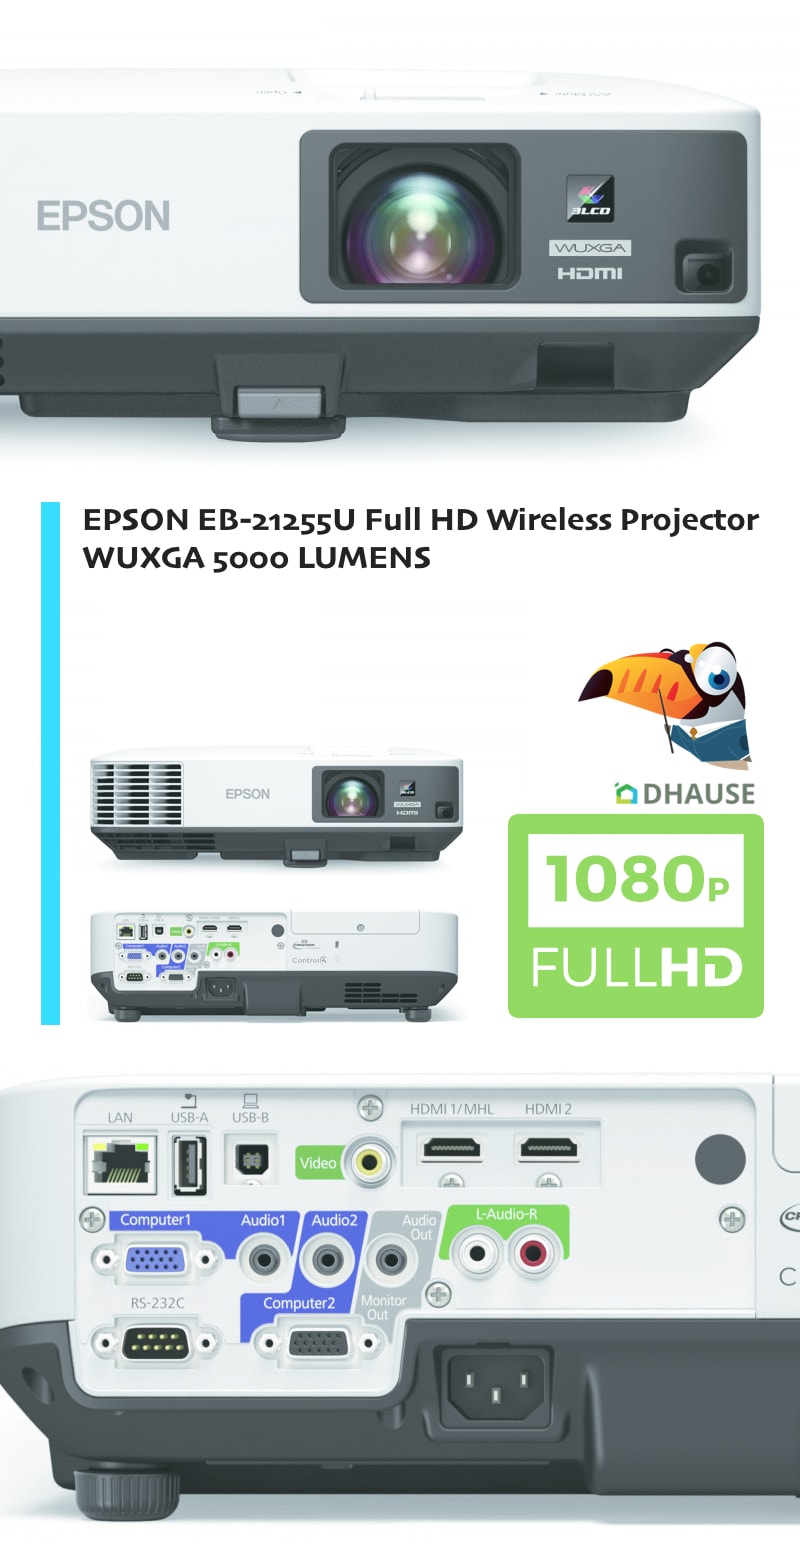 EPSON EB-2255U Full HD 1-min